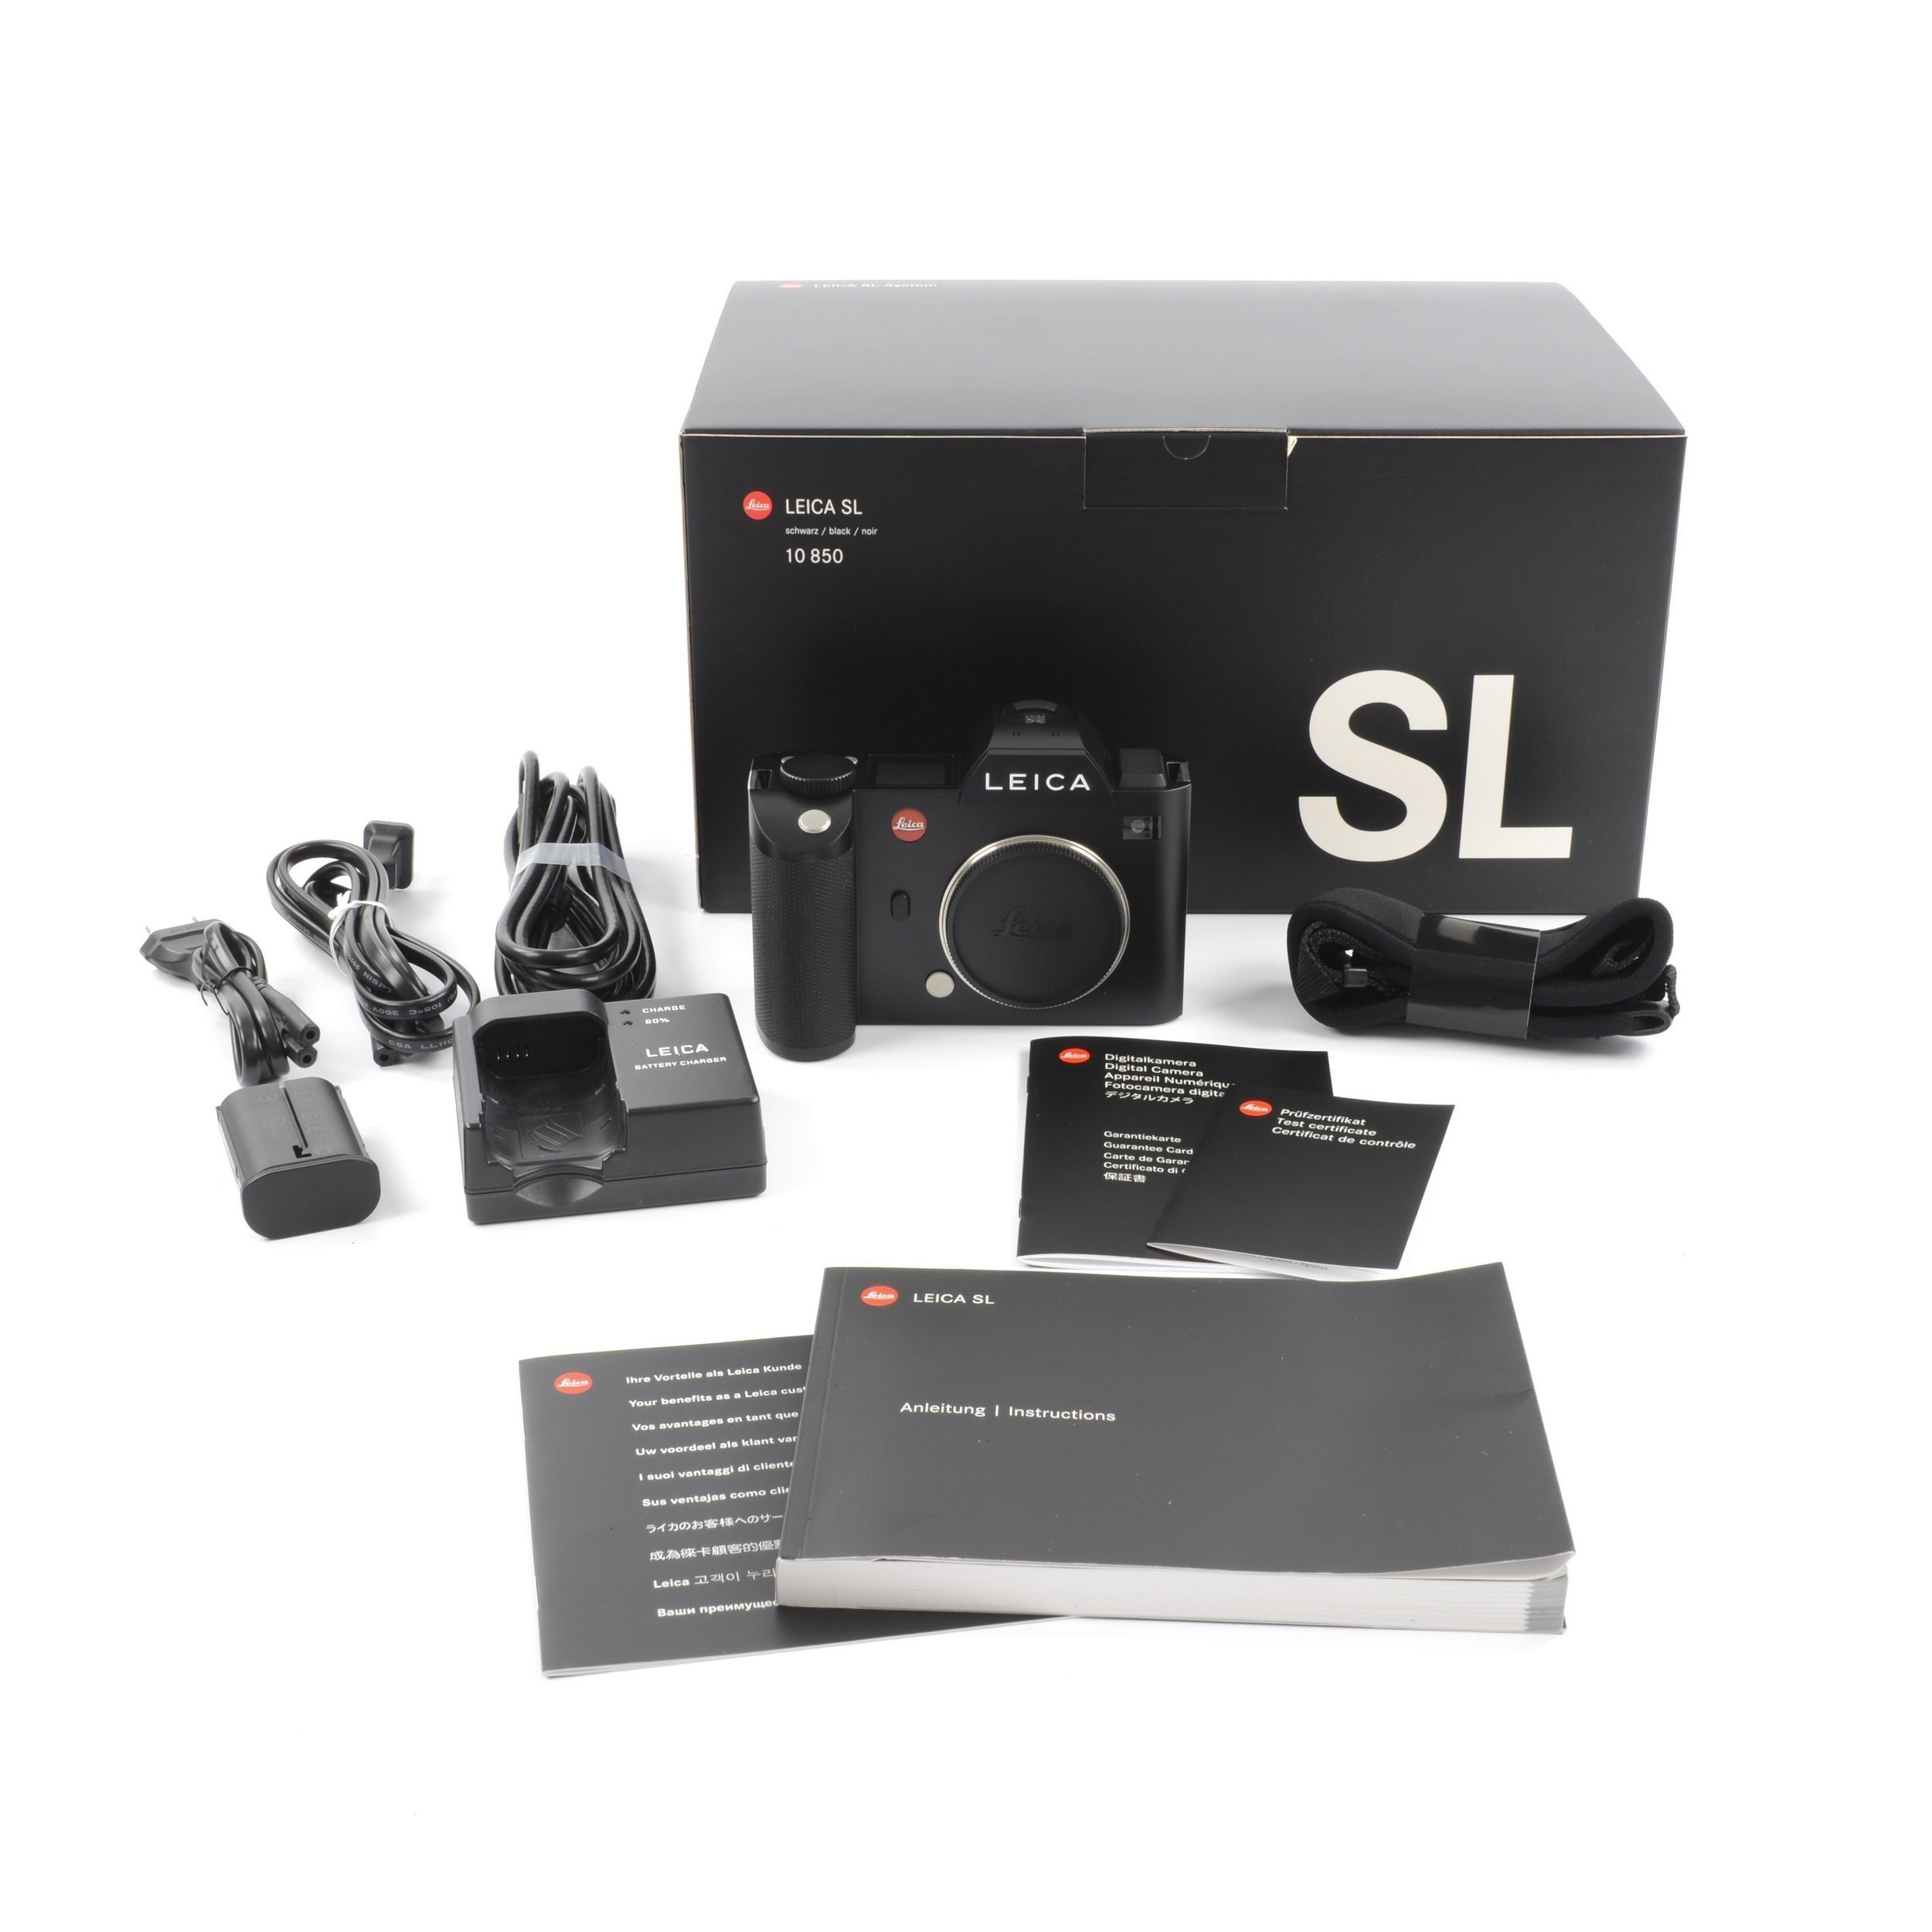 Broers en zussen Vleien Portugees Leica SL (Typ 601) + Box - Leica SL System Cameras - Leica SL System - Leica  - Products